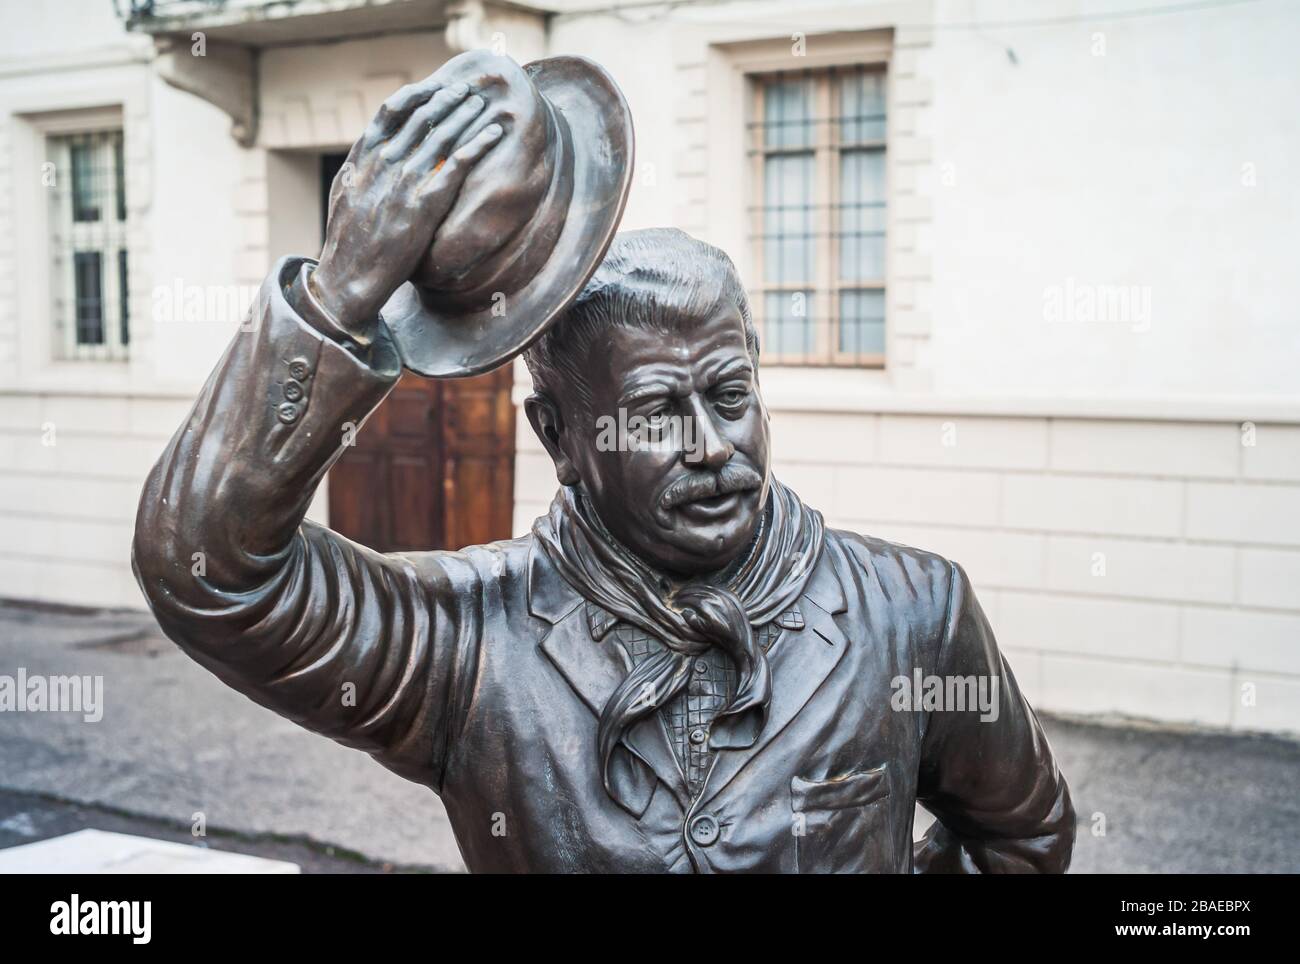 Brescello, Italie - 1er janvier 2014 : statue de bronze du Peppone à Brescello, un célèbre personnage de cinéma basé sur les livres Don Camillo par Giovannino Guares Banque D'Images